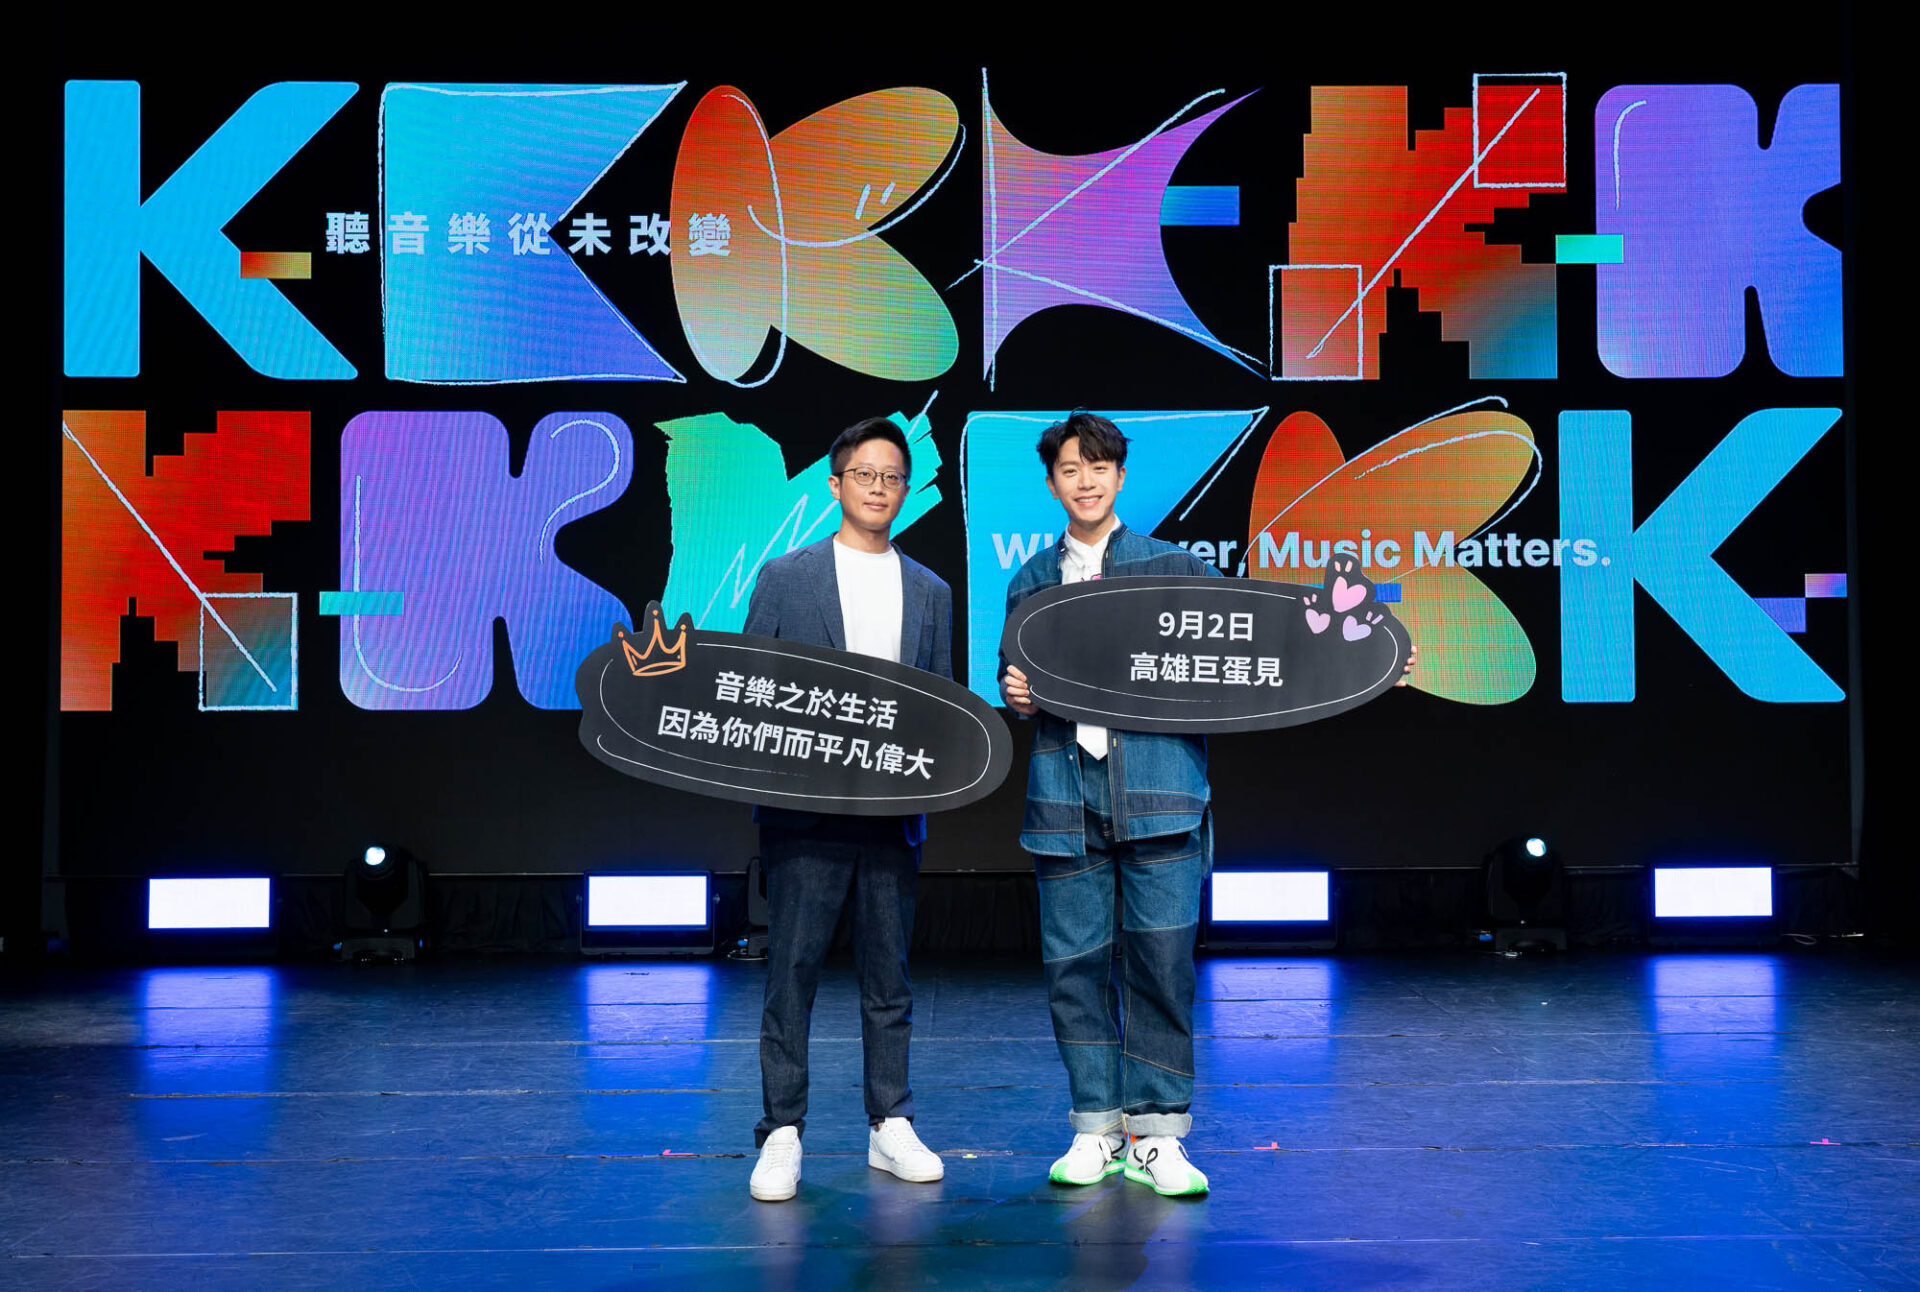 第 18 屆 KKBOX 風雲榜高雄巨蛋門票聽歌免費抽 - 電腦王阿達